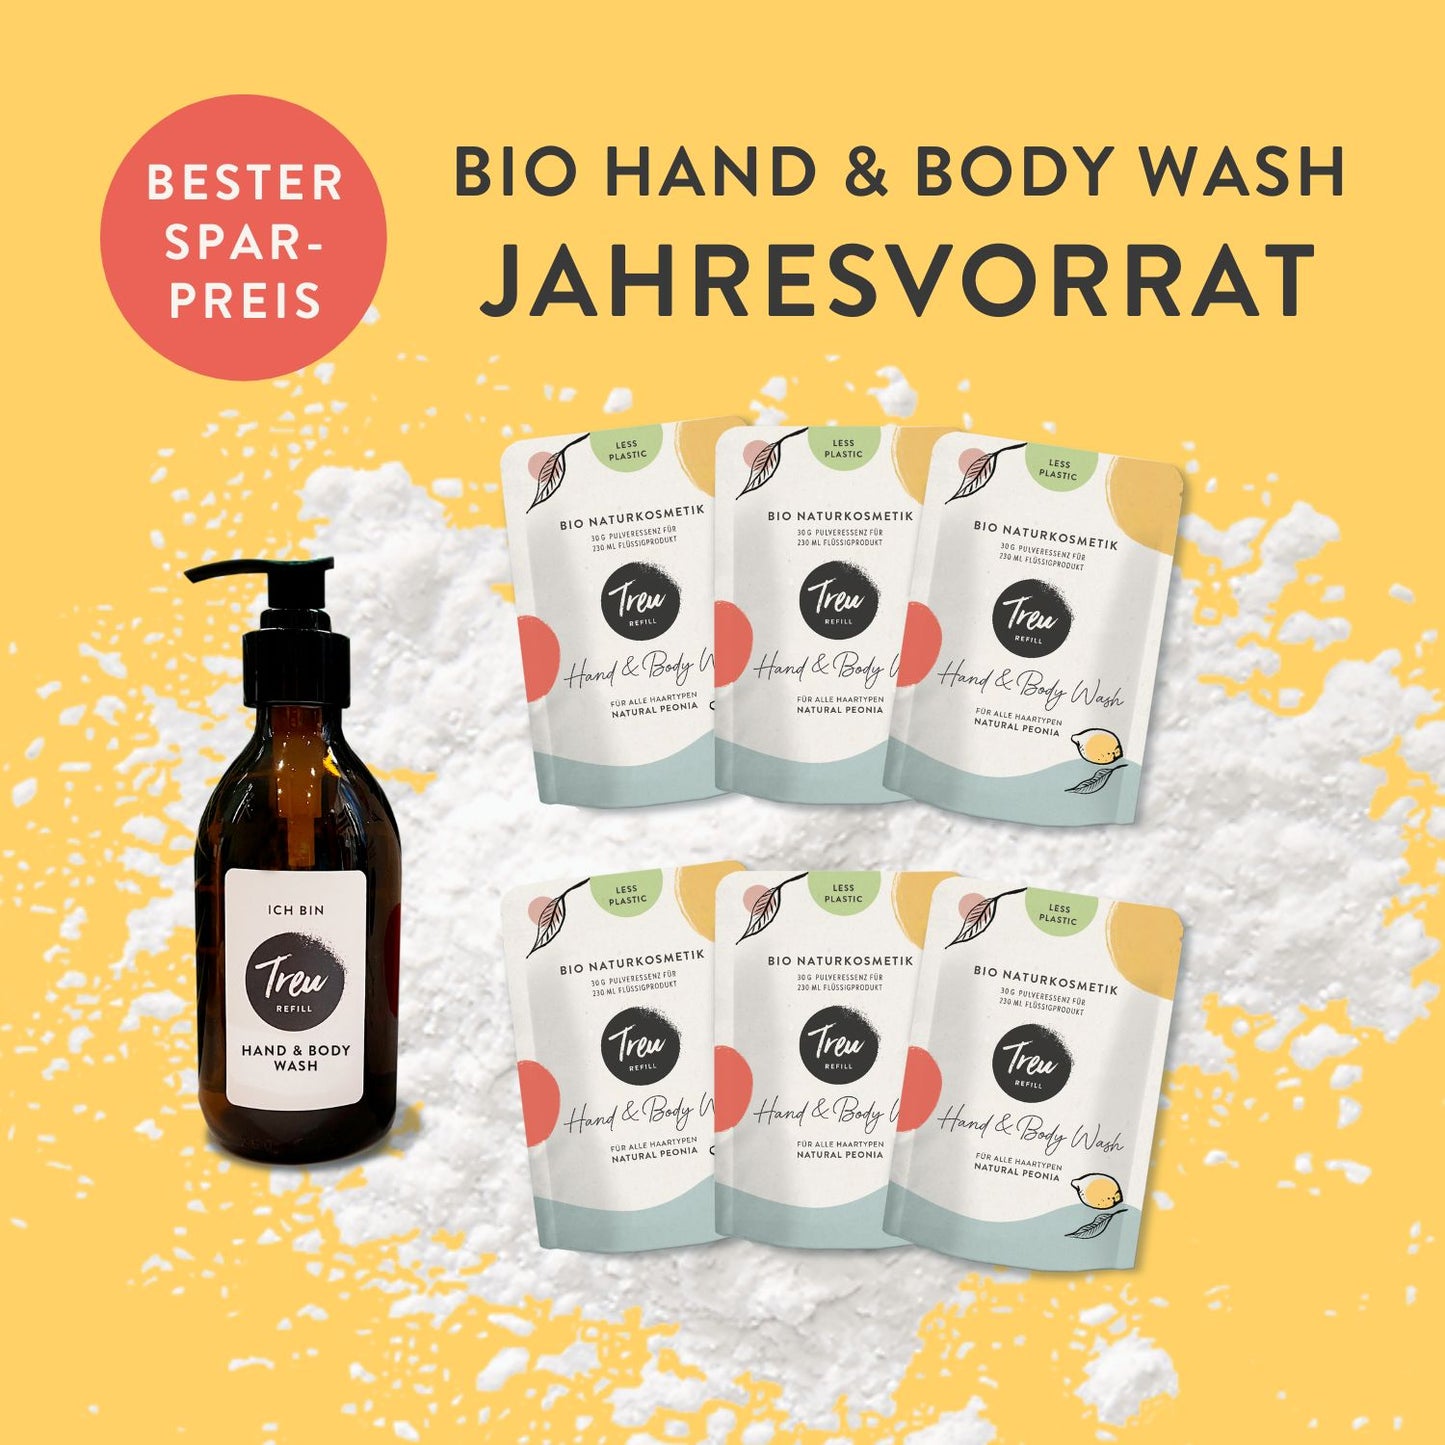 Jahresvorrat Bio Naturkosmetik Hand & Body Wash in Pulverform mit Refill-Glasflasche